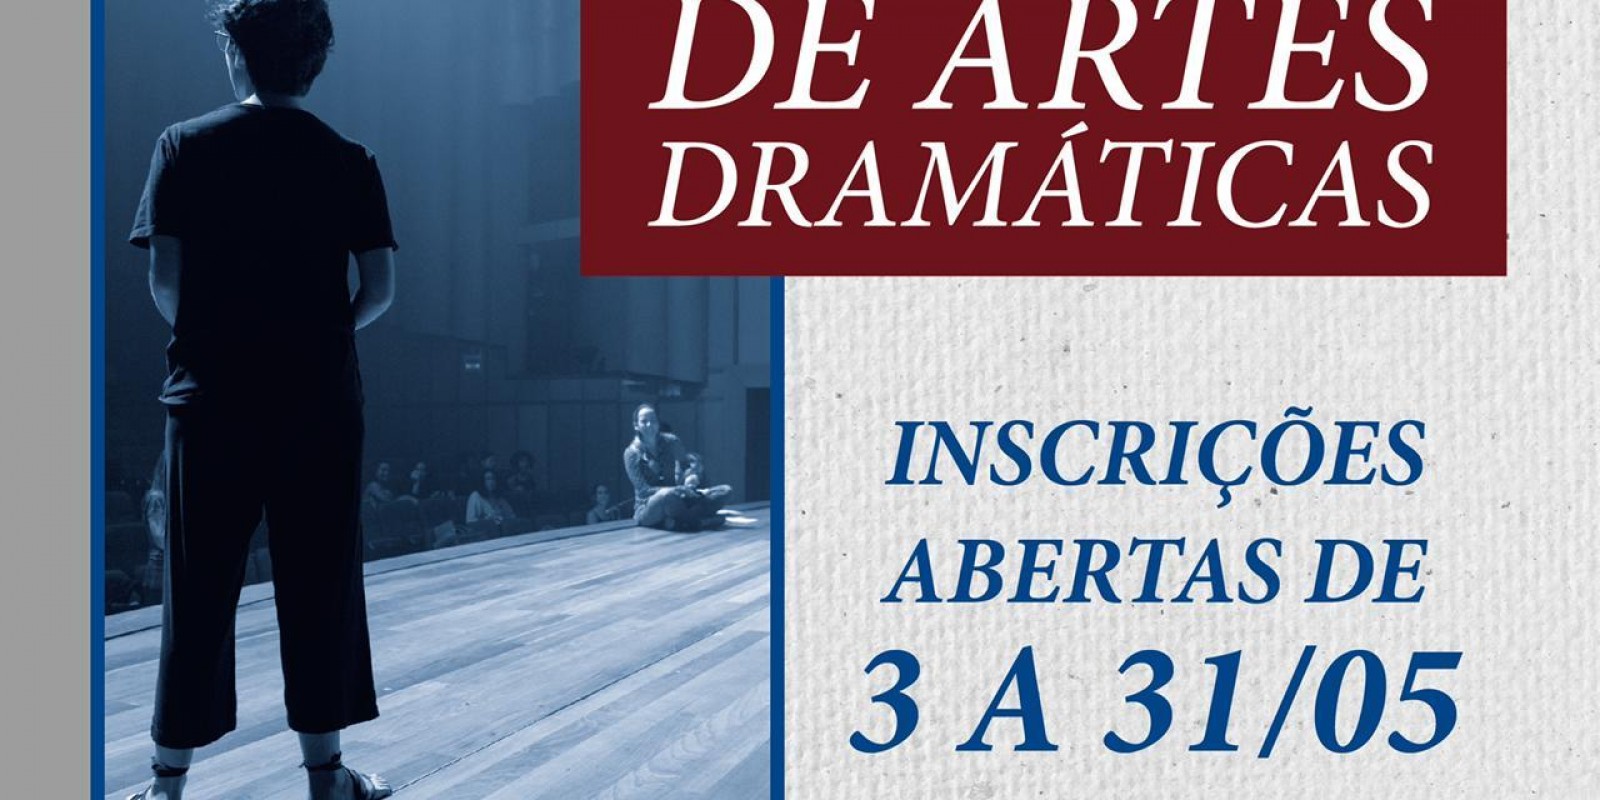 Escola Sesc de Artes Dramáticas abre vagas gratuitas para qualificação profissional de atores e atrizes